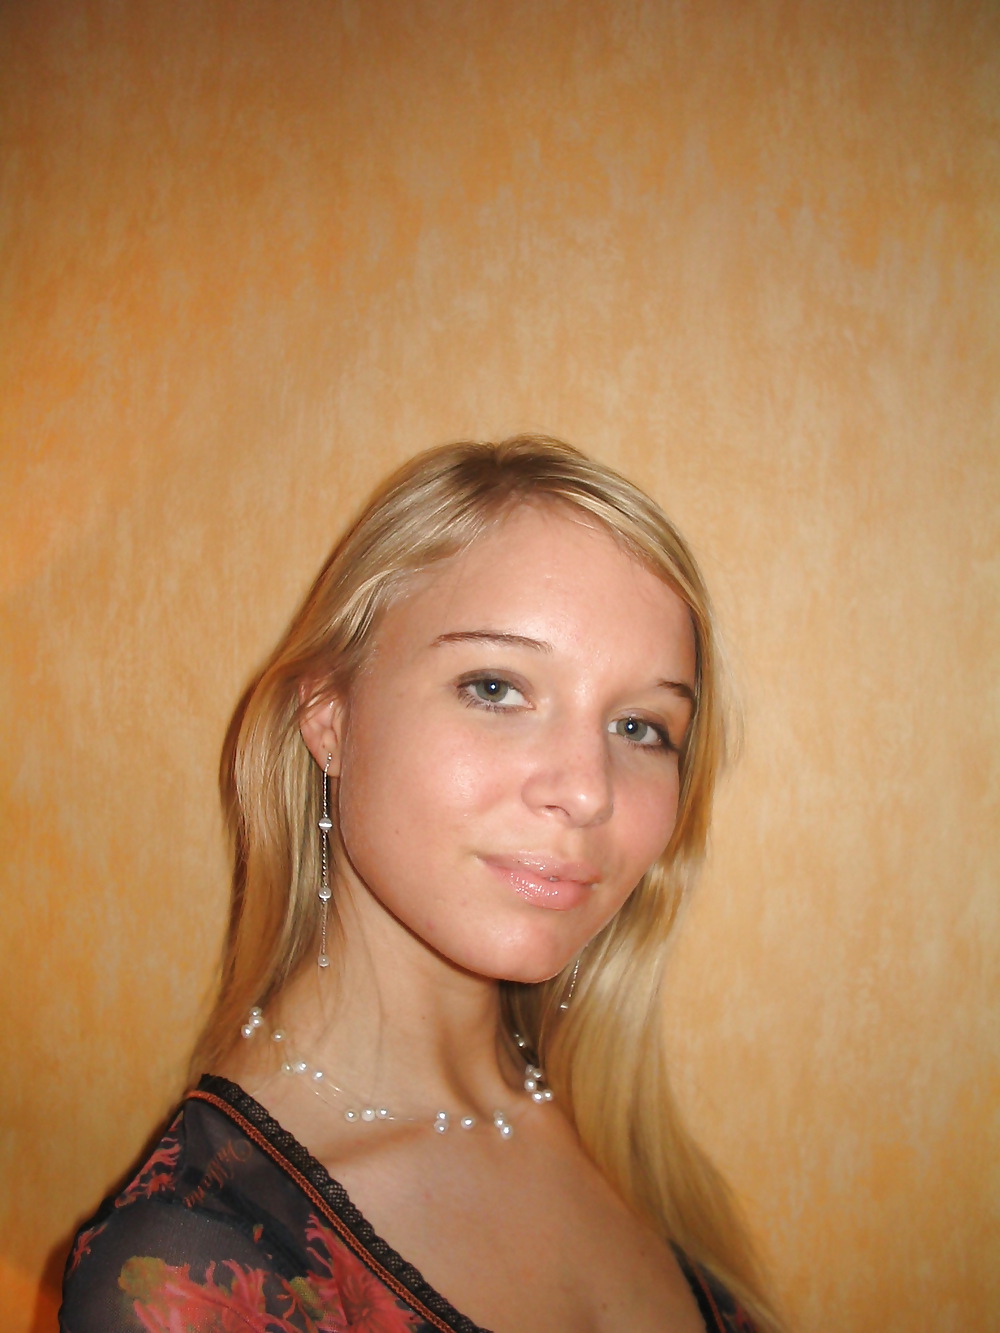 Hot ex russian teen girlfriend #7484997